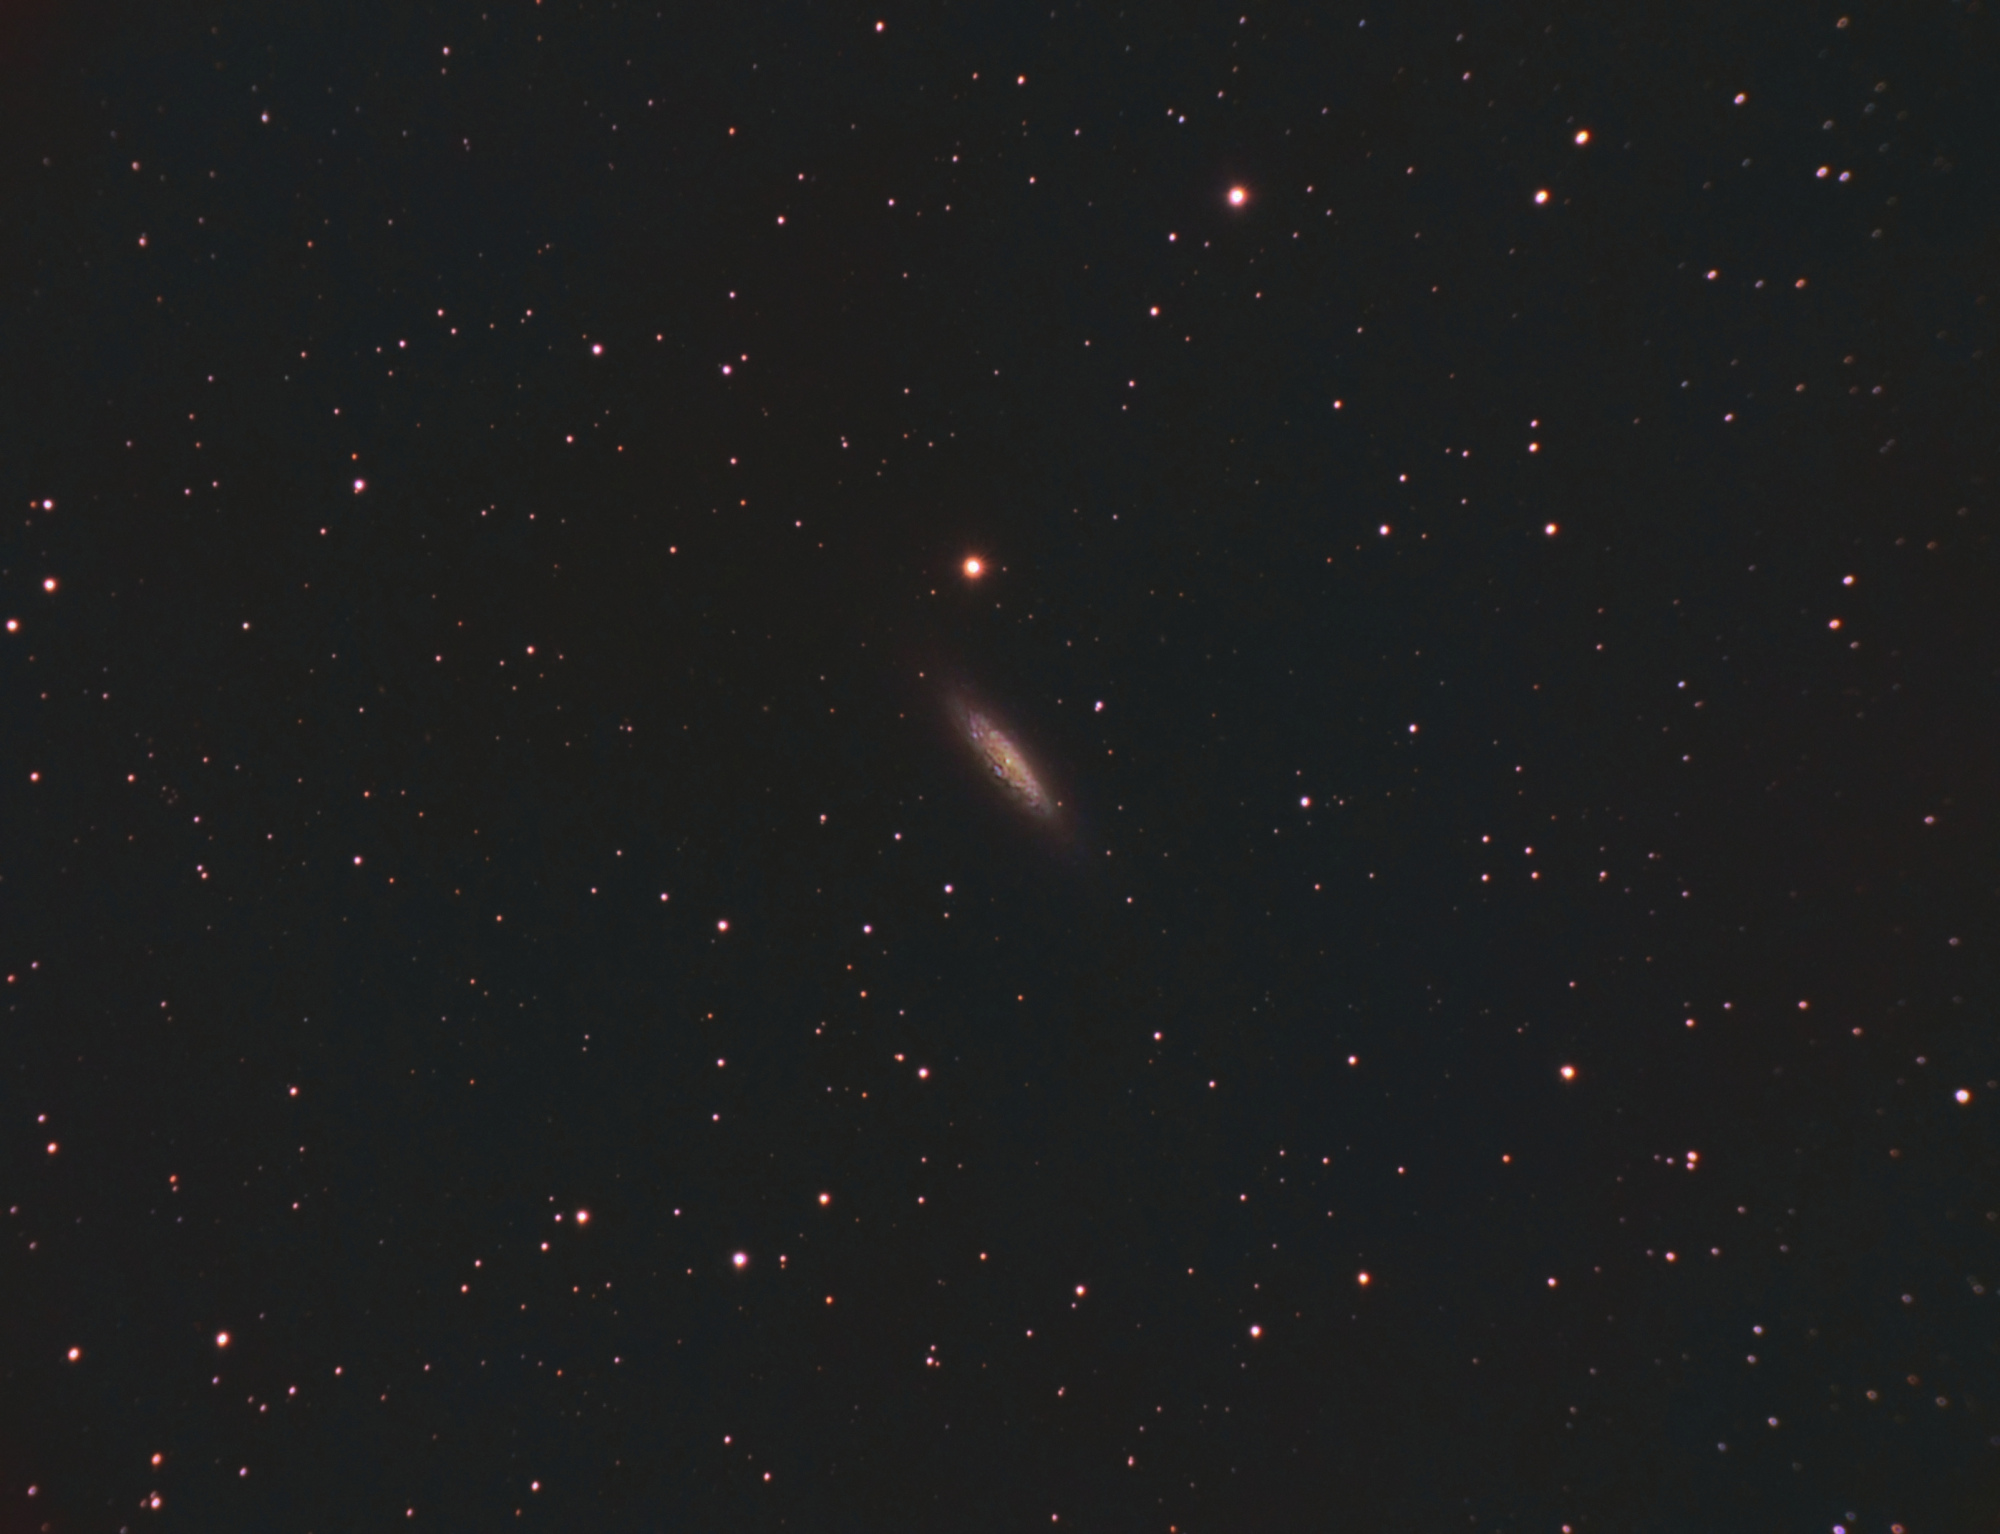 64b4c6d871532_NGC6503-C8-LRGBSiril-pix-finale.thumb.jpg.0888cb450062508b166d0850e4be15c1.jpg